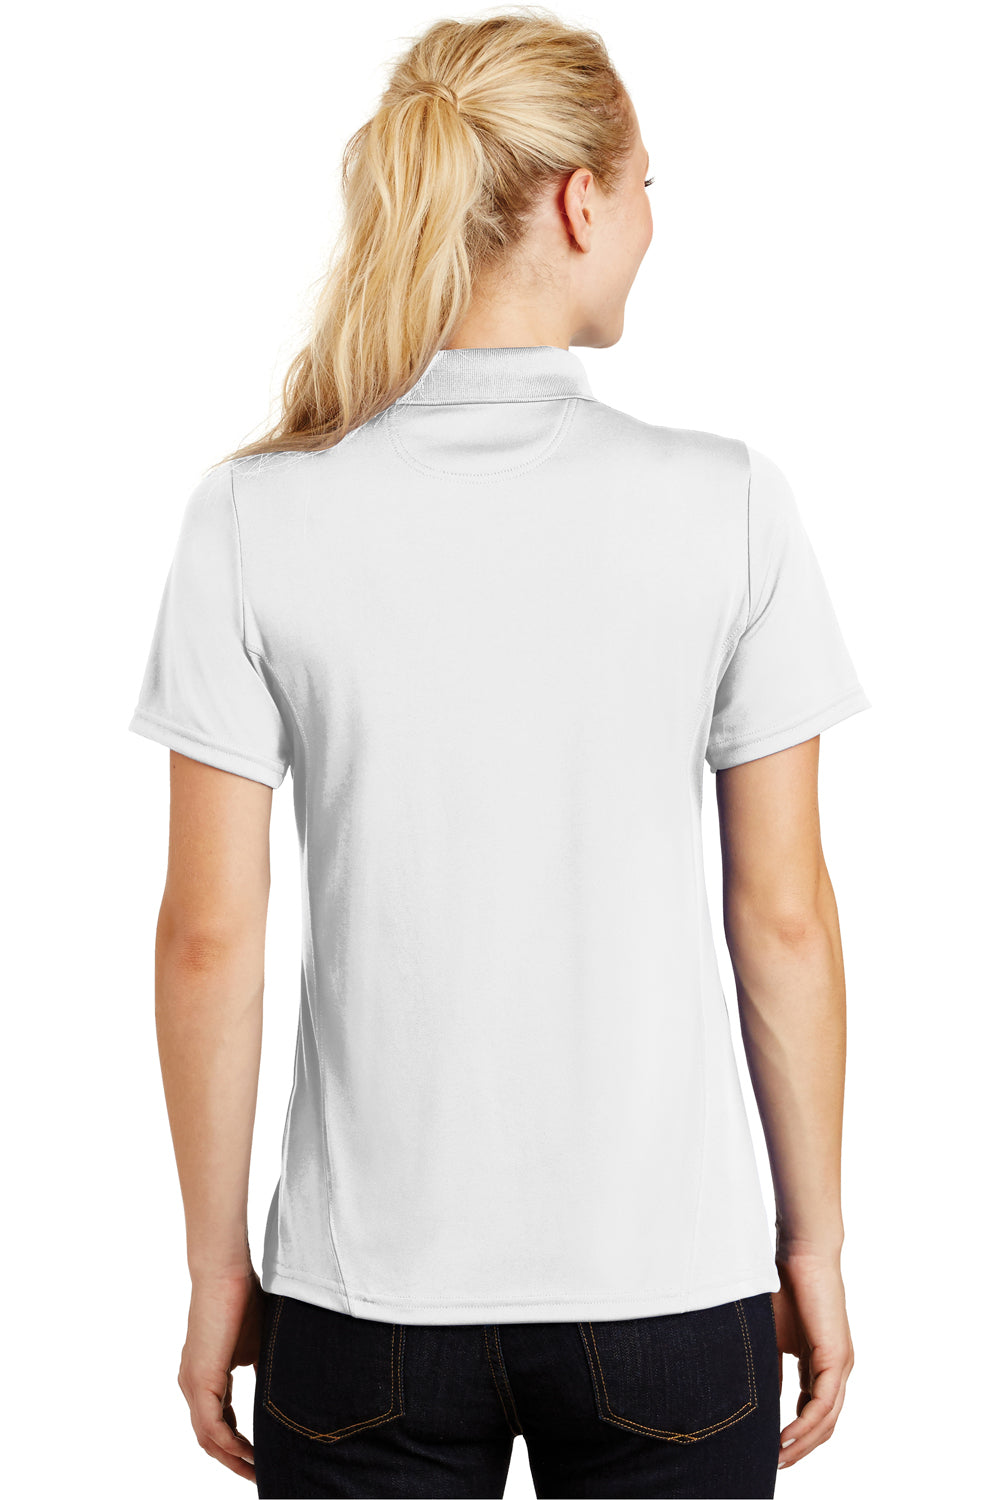 Sport-Tek L475 Womens Dry Zone Moisture Wicking Short Sleeve Polo Shirt White Back